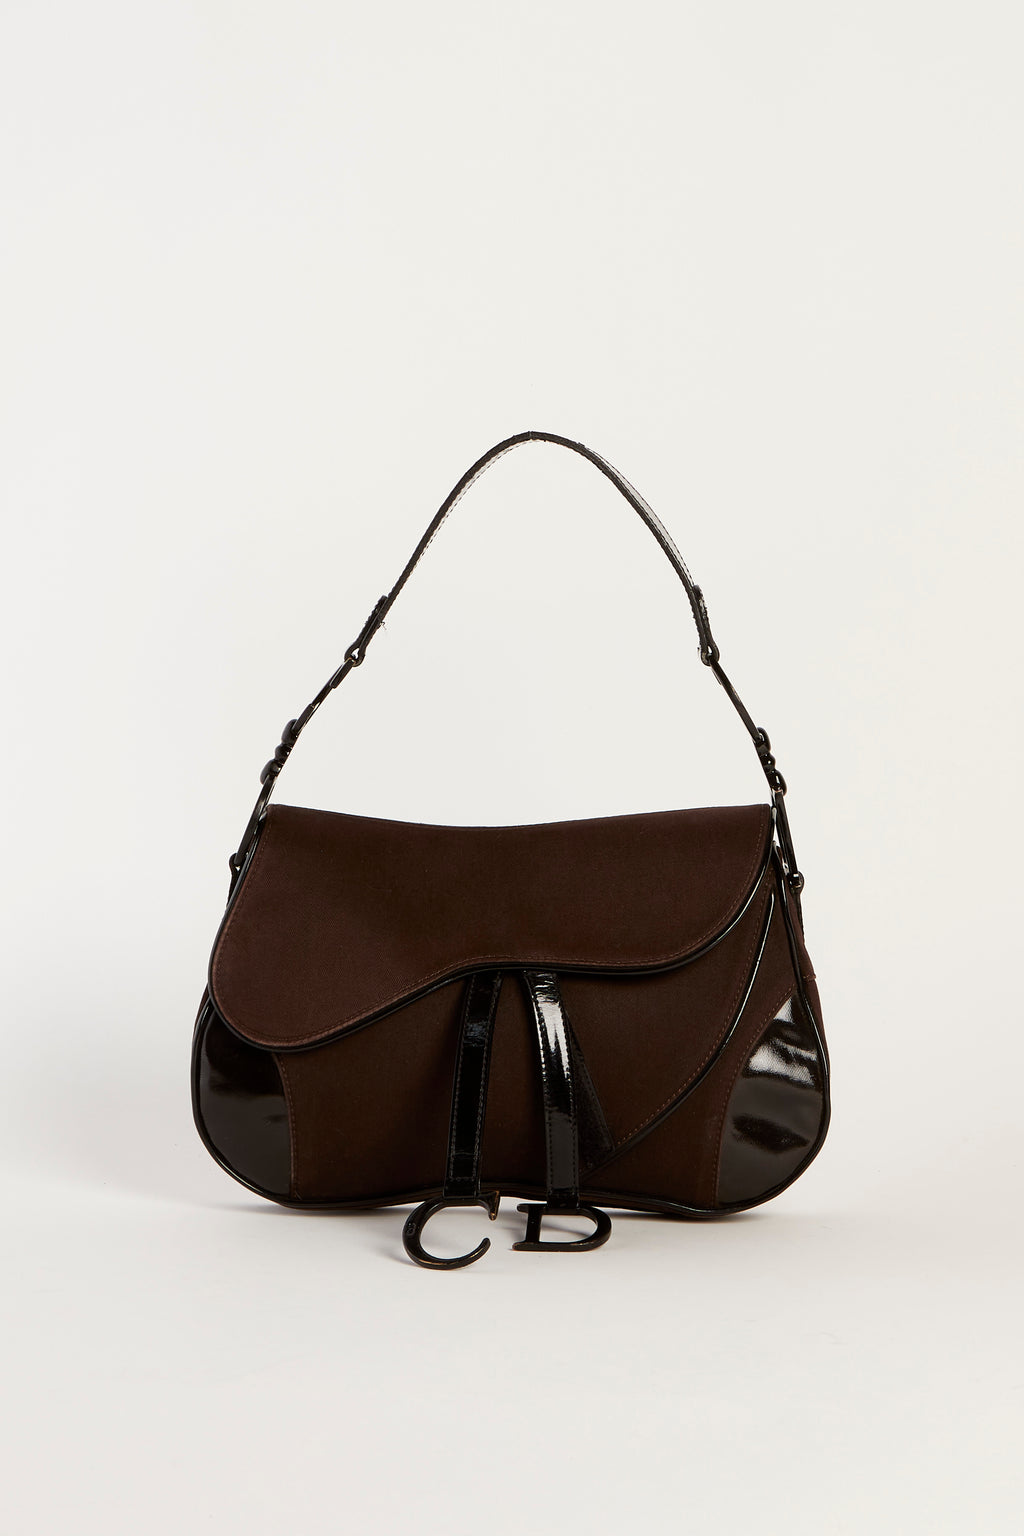 2000s Christian Dior Black & Brown Double Saddle Bag